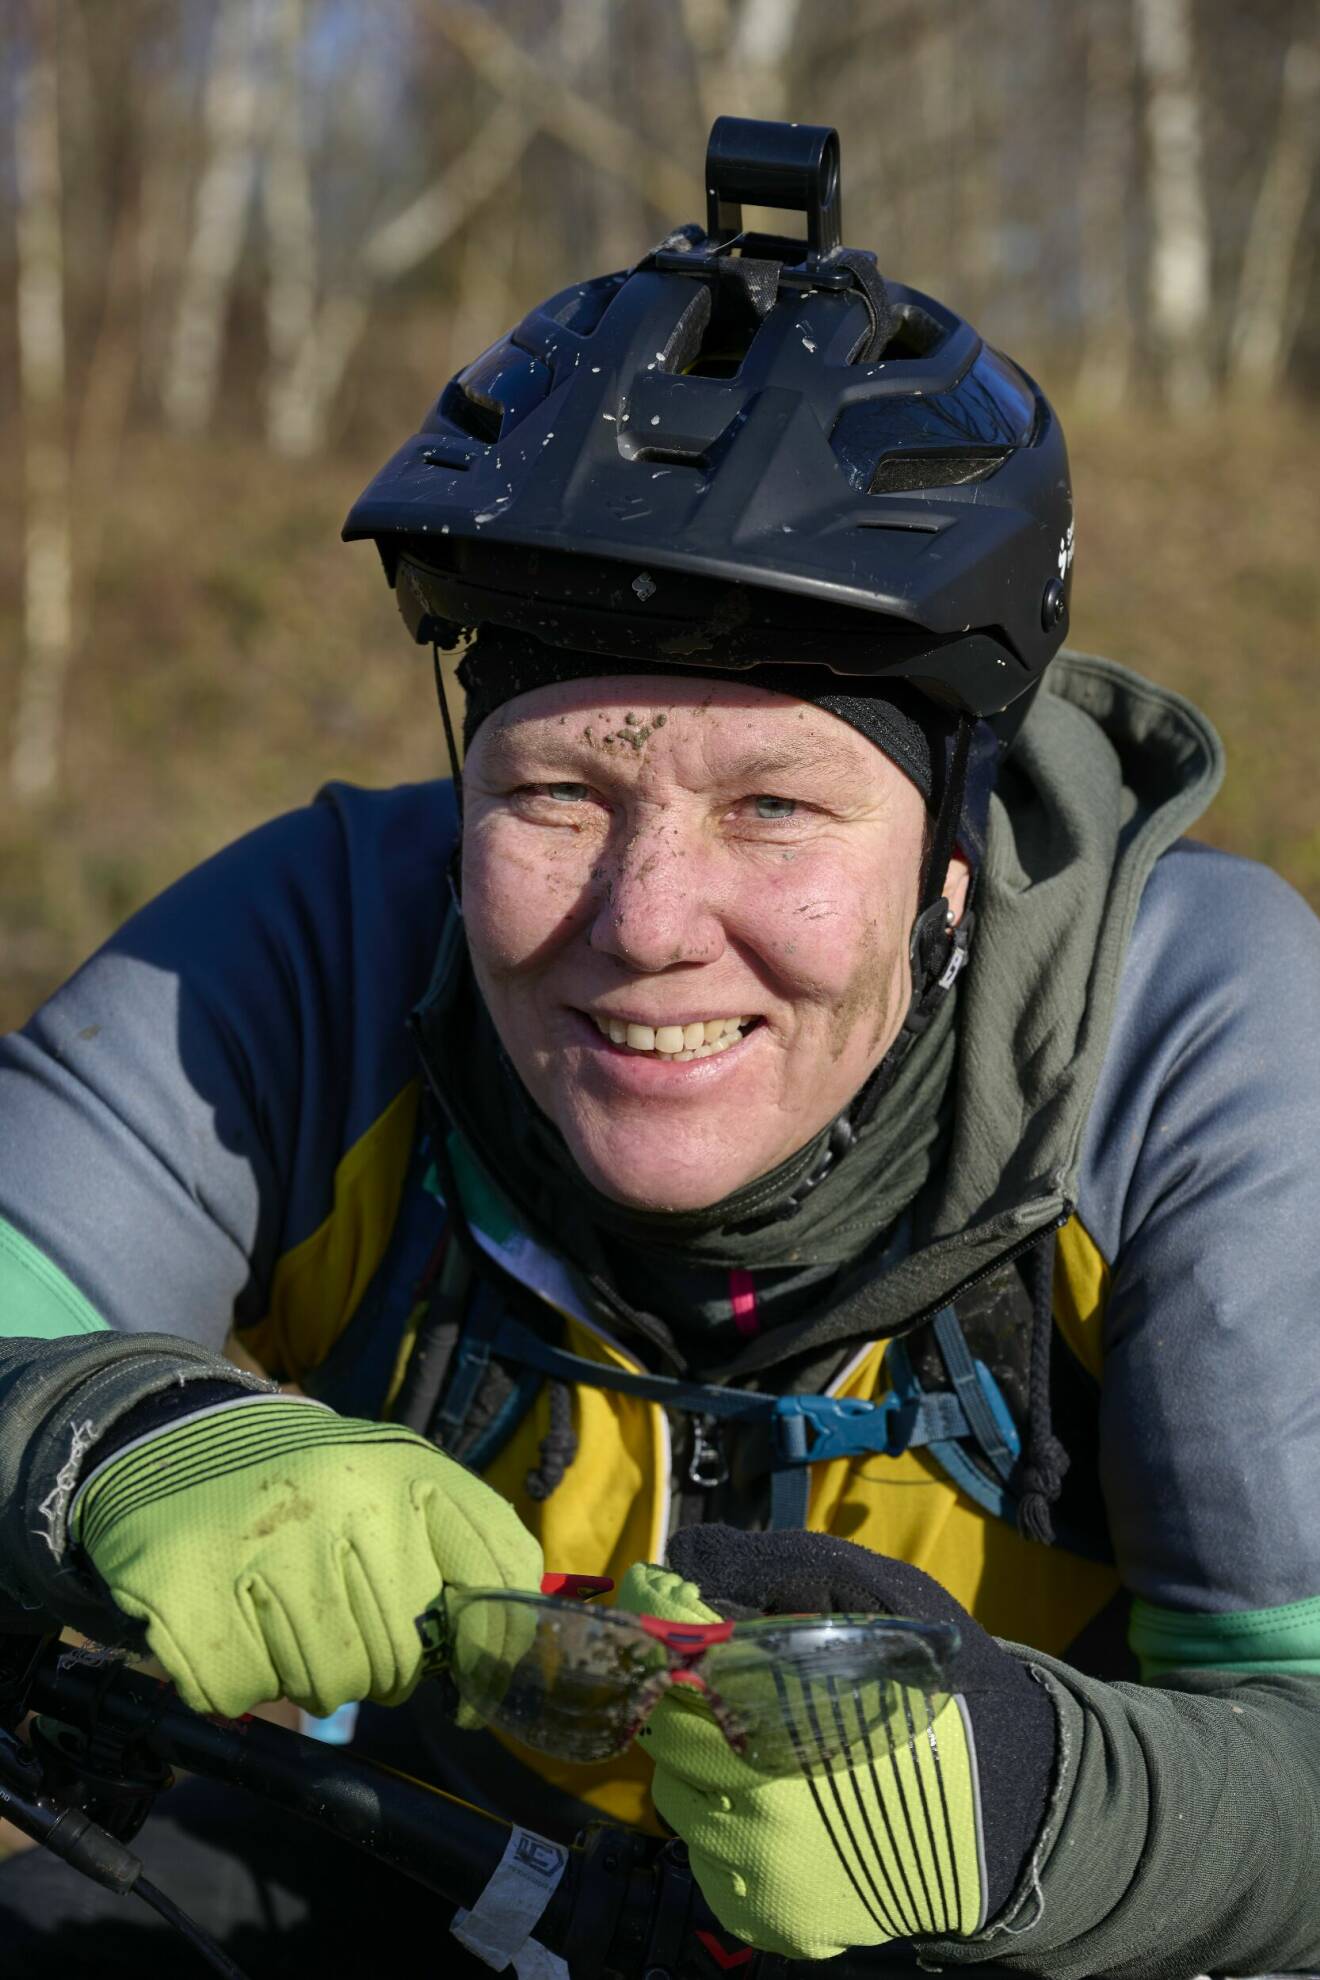 Närbild på Andora Nejsum som ler mot kameran. Hon sitter på en mountainbike och är smutsig i ansiktet.